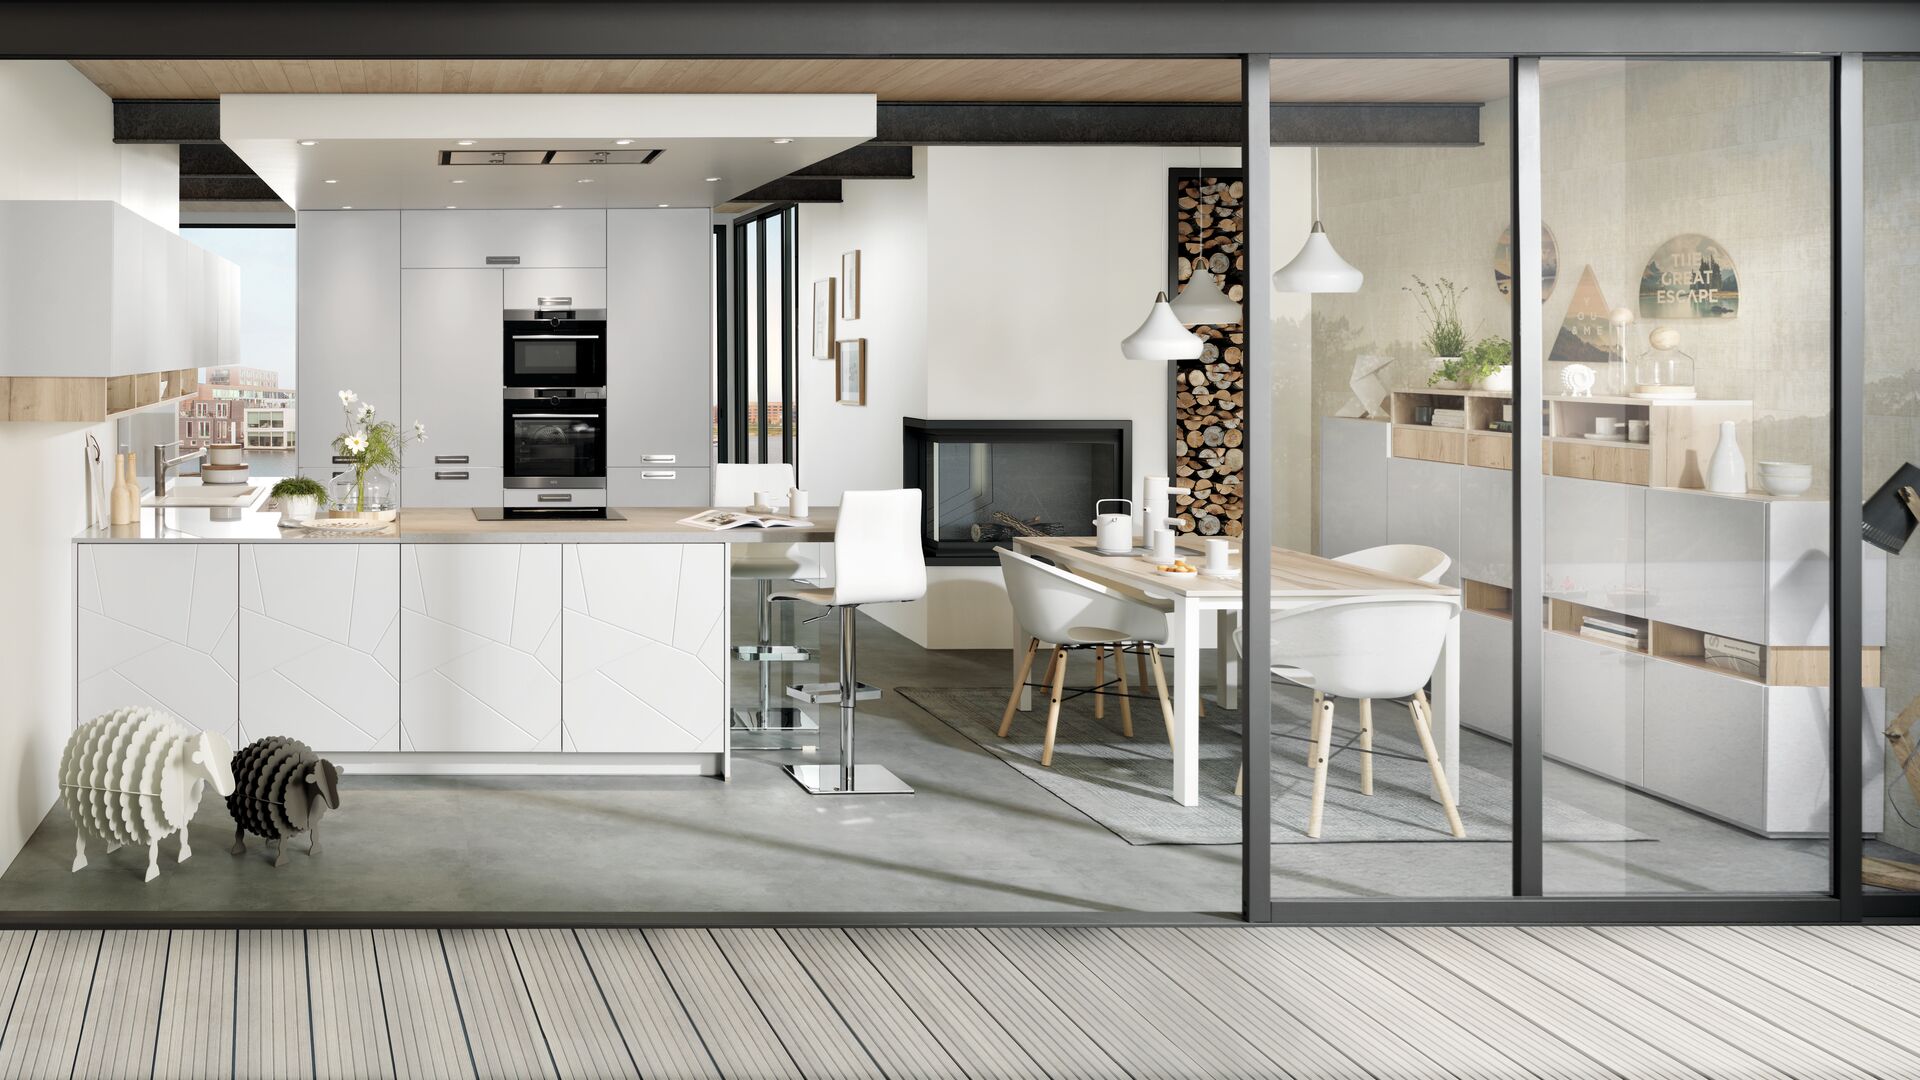 Offene Küche im skandinavischen Stil in weiß und hellem Holz